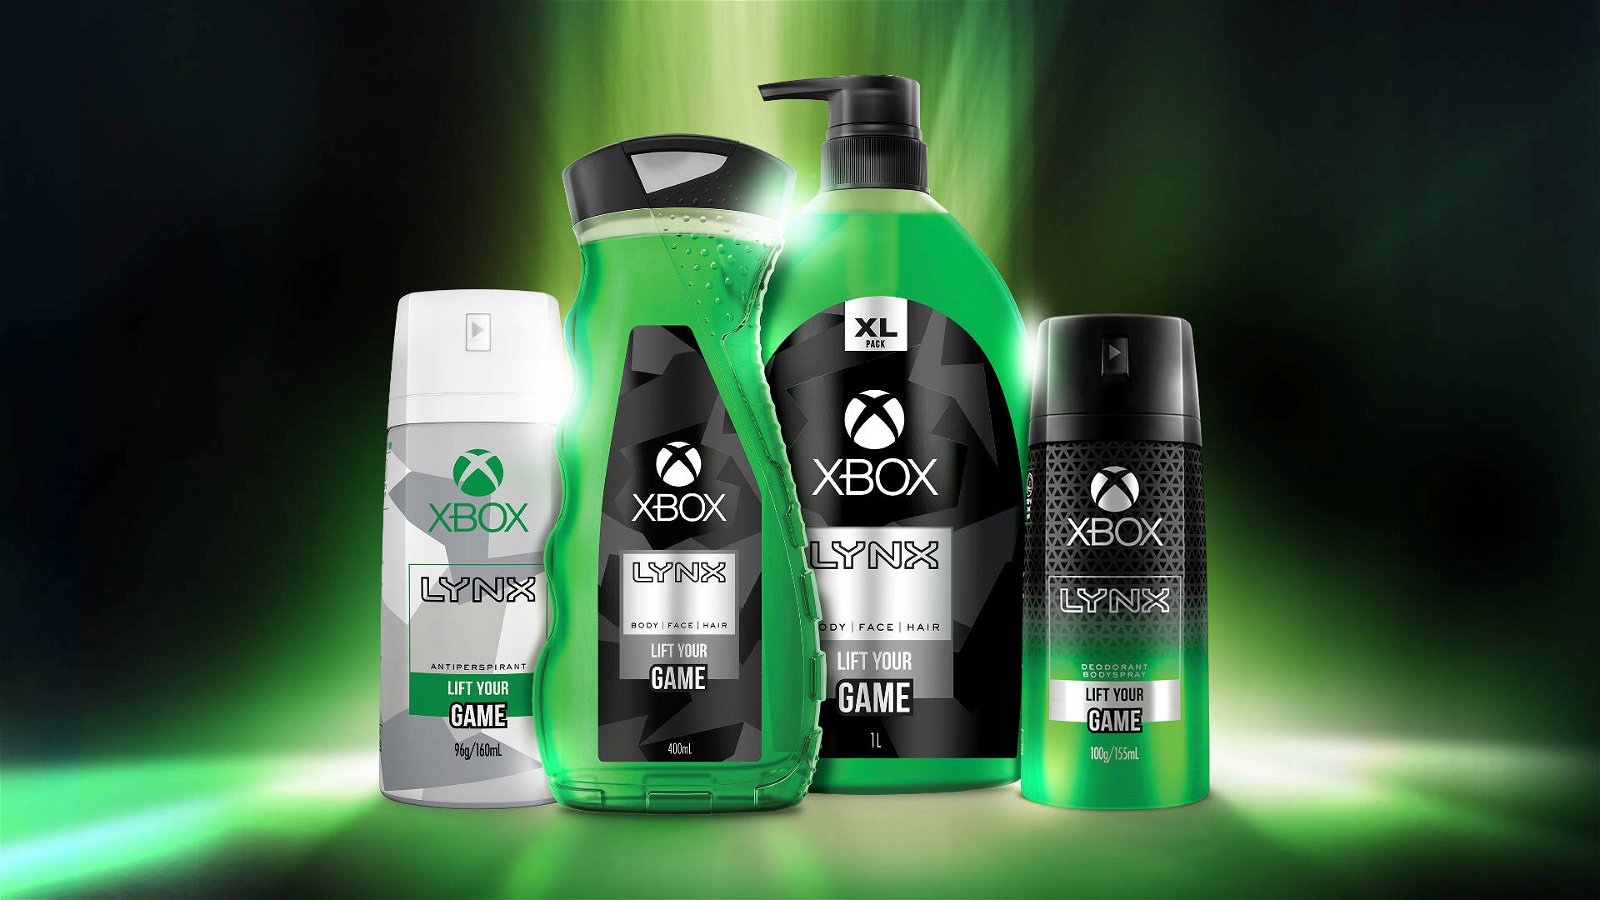 Immagine di E3 2019, Microsoft annuncia in anticipo un nuovo prodotto Xbox: un set da bagno